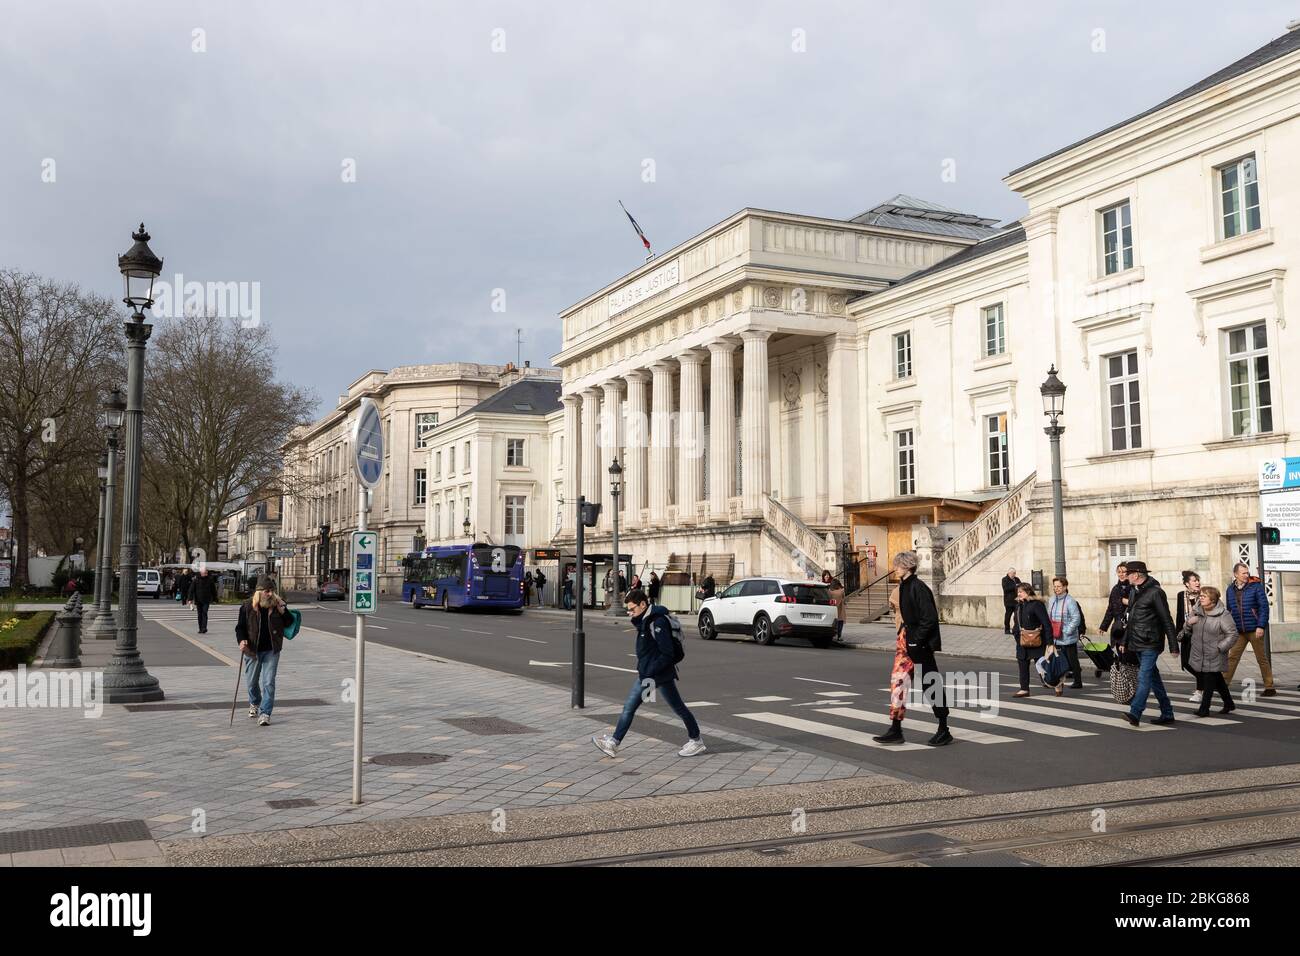 Tours, France - 8 février 2020: Les gens marchant devant le Palais de Justice (Cour de Justice) un jour d'hiver dans le centre-ville Banque D'Images